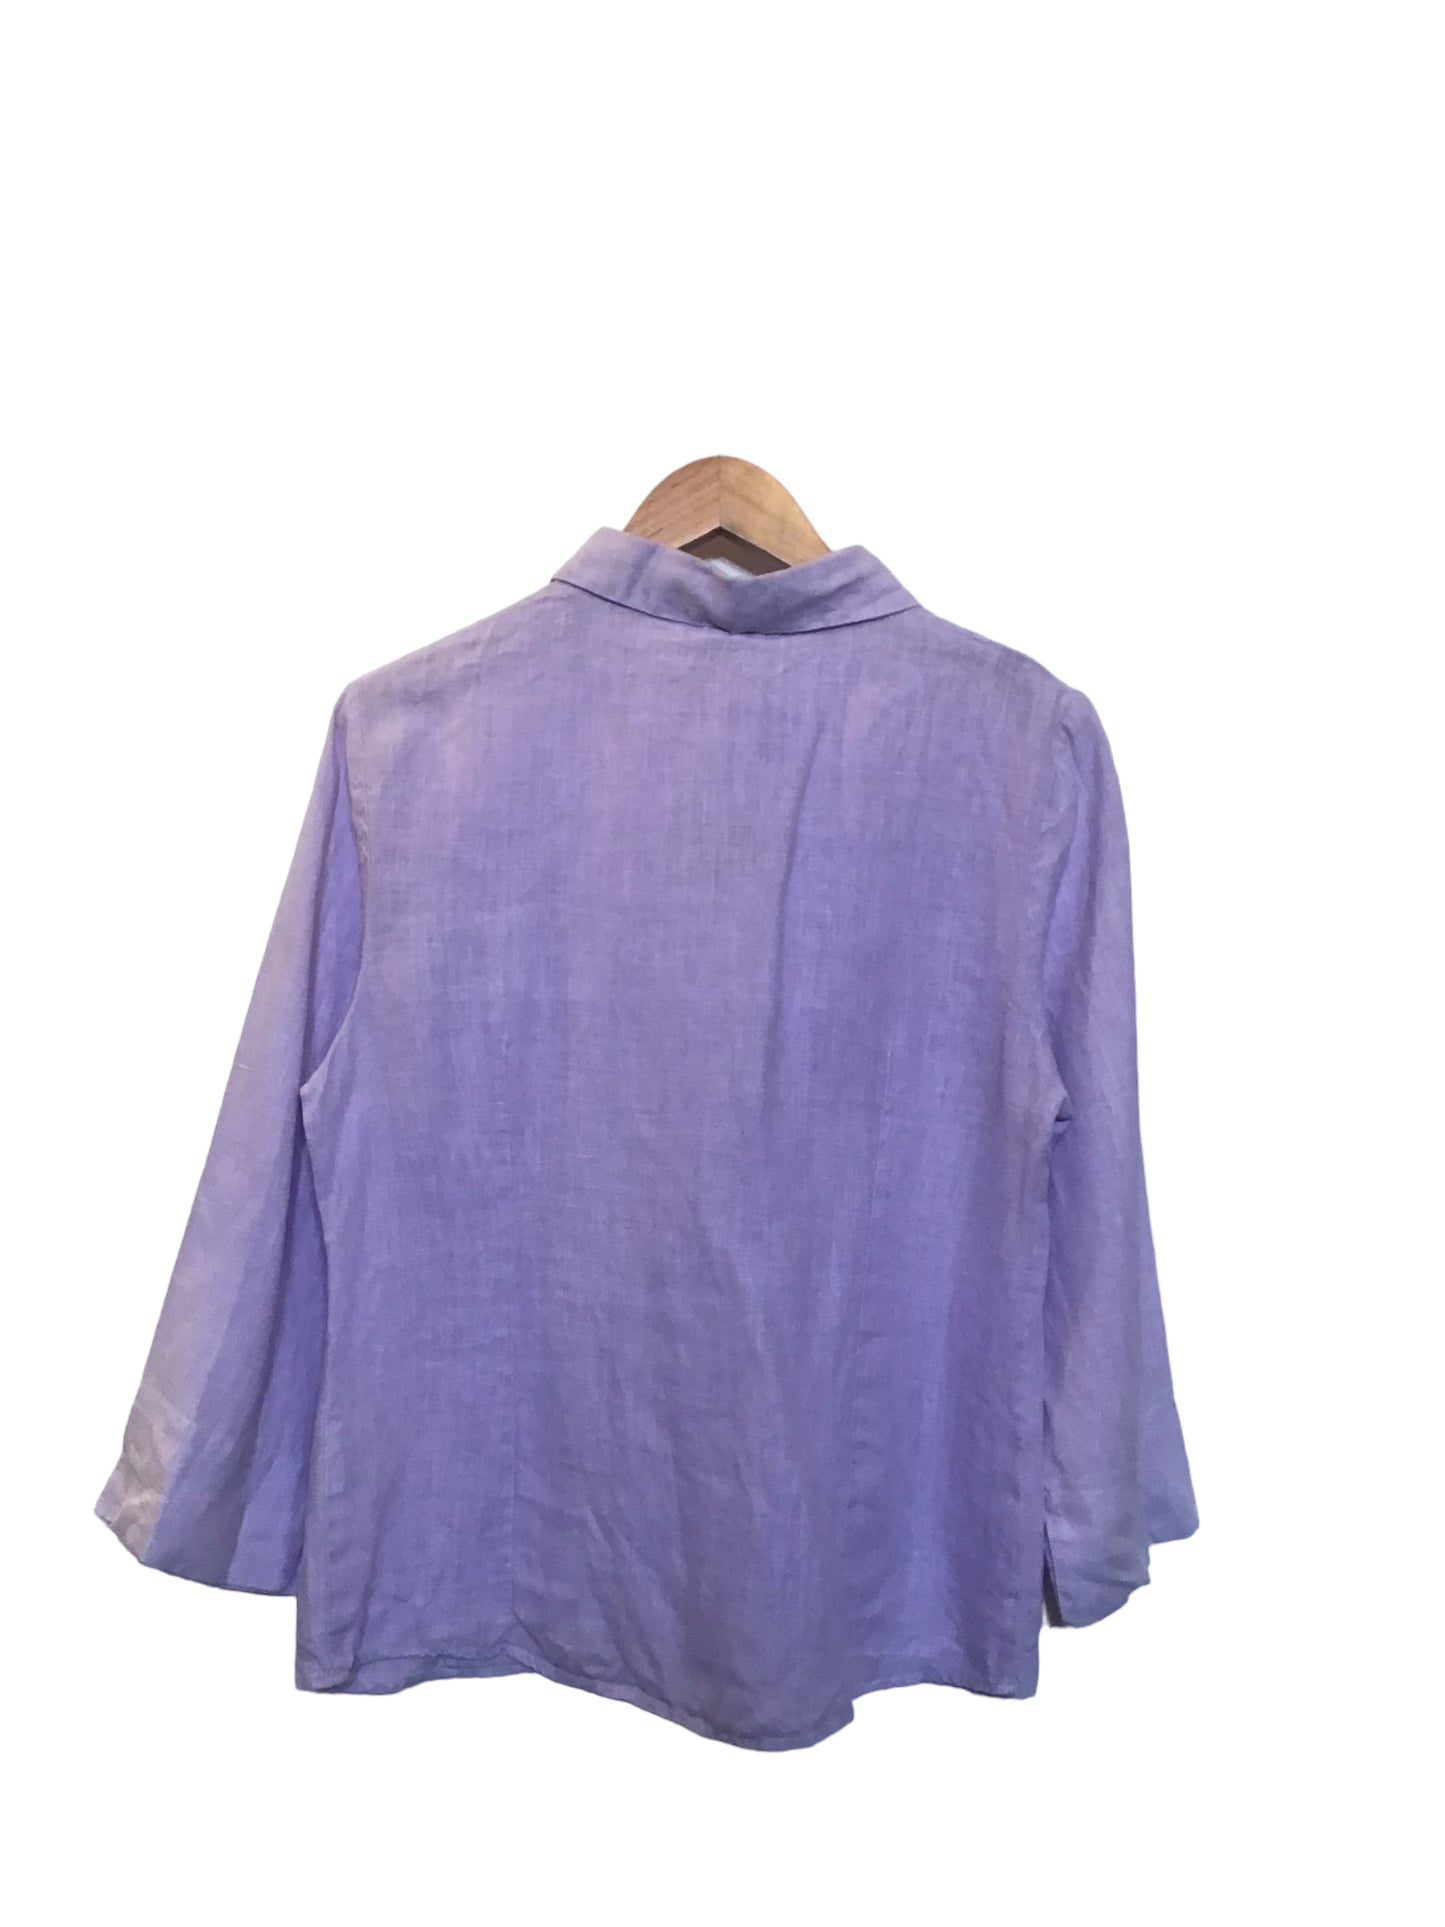 Linen Shirt (Size S)